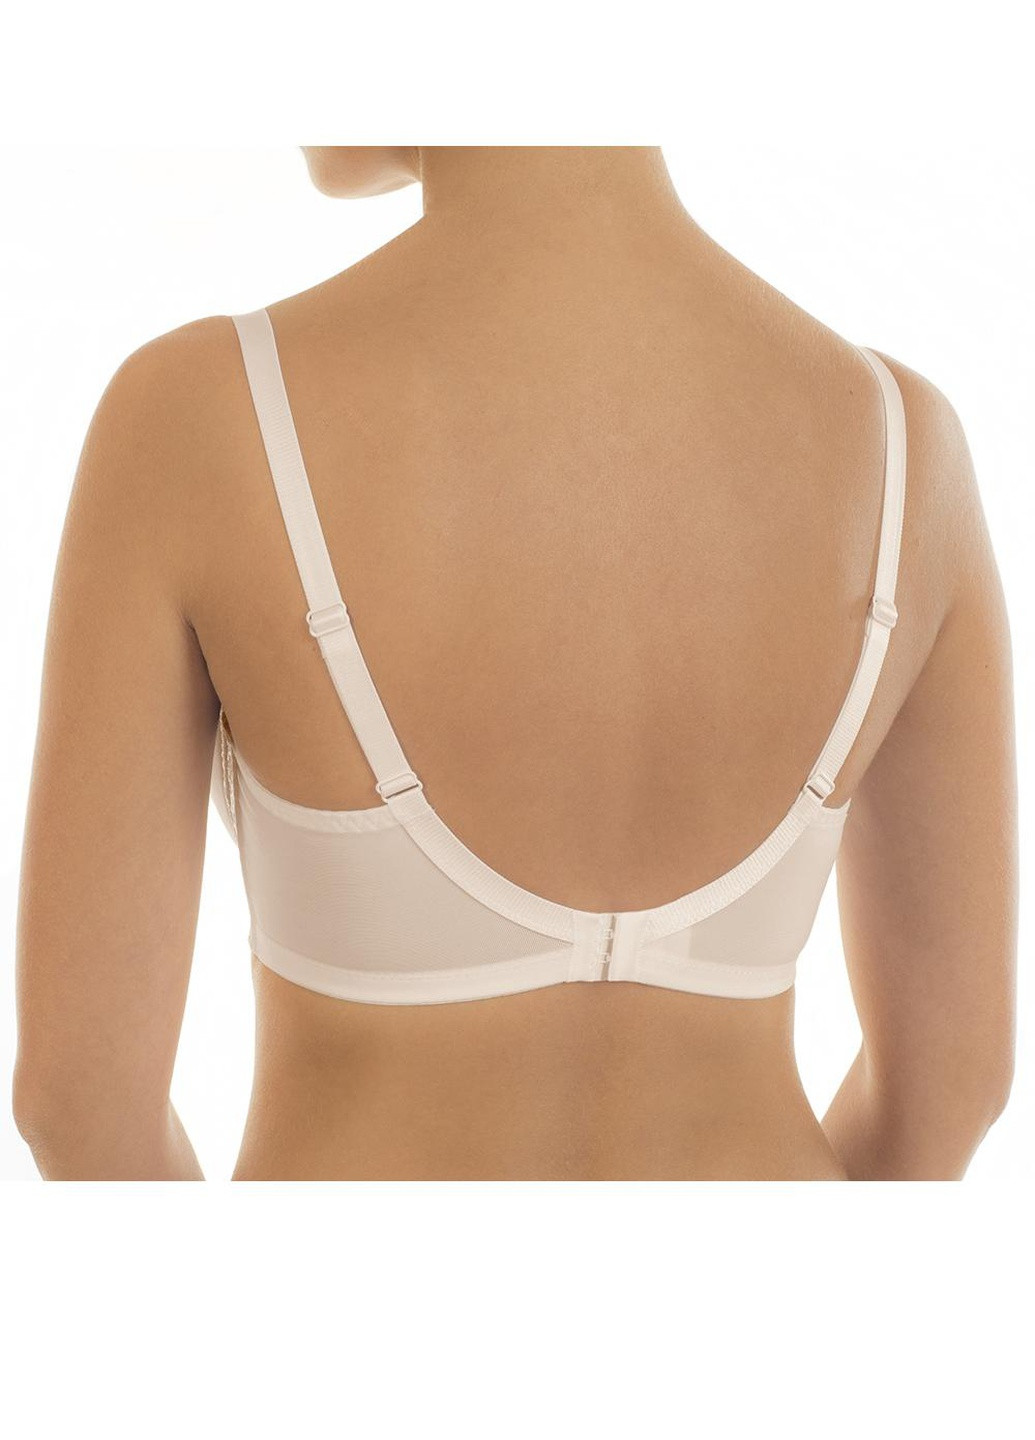 Белый бюстгальтер жіночий полупоролон lingerie sofia 75c срібний піон 011 12b 03 Effetto